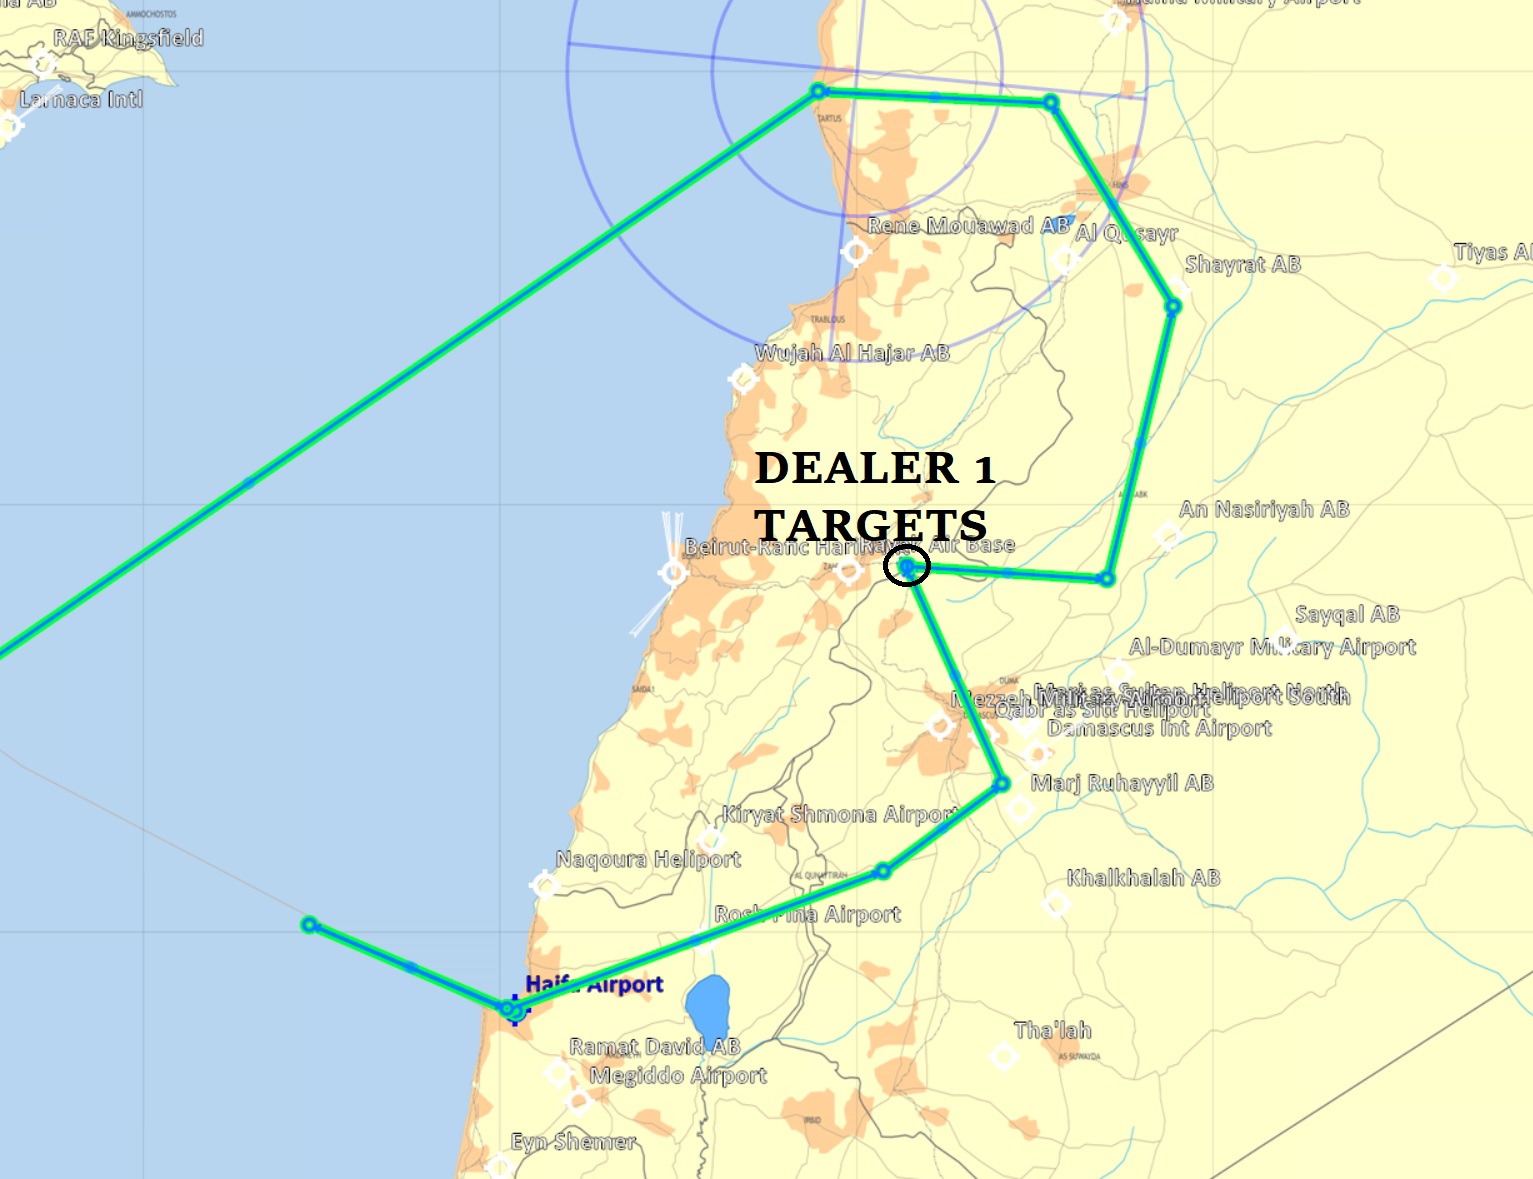 week14 dealer 1 target route map.jpg